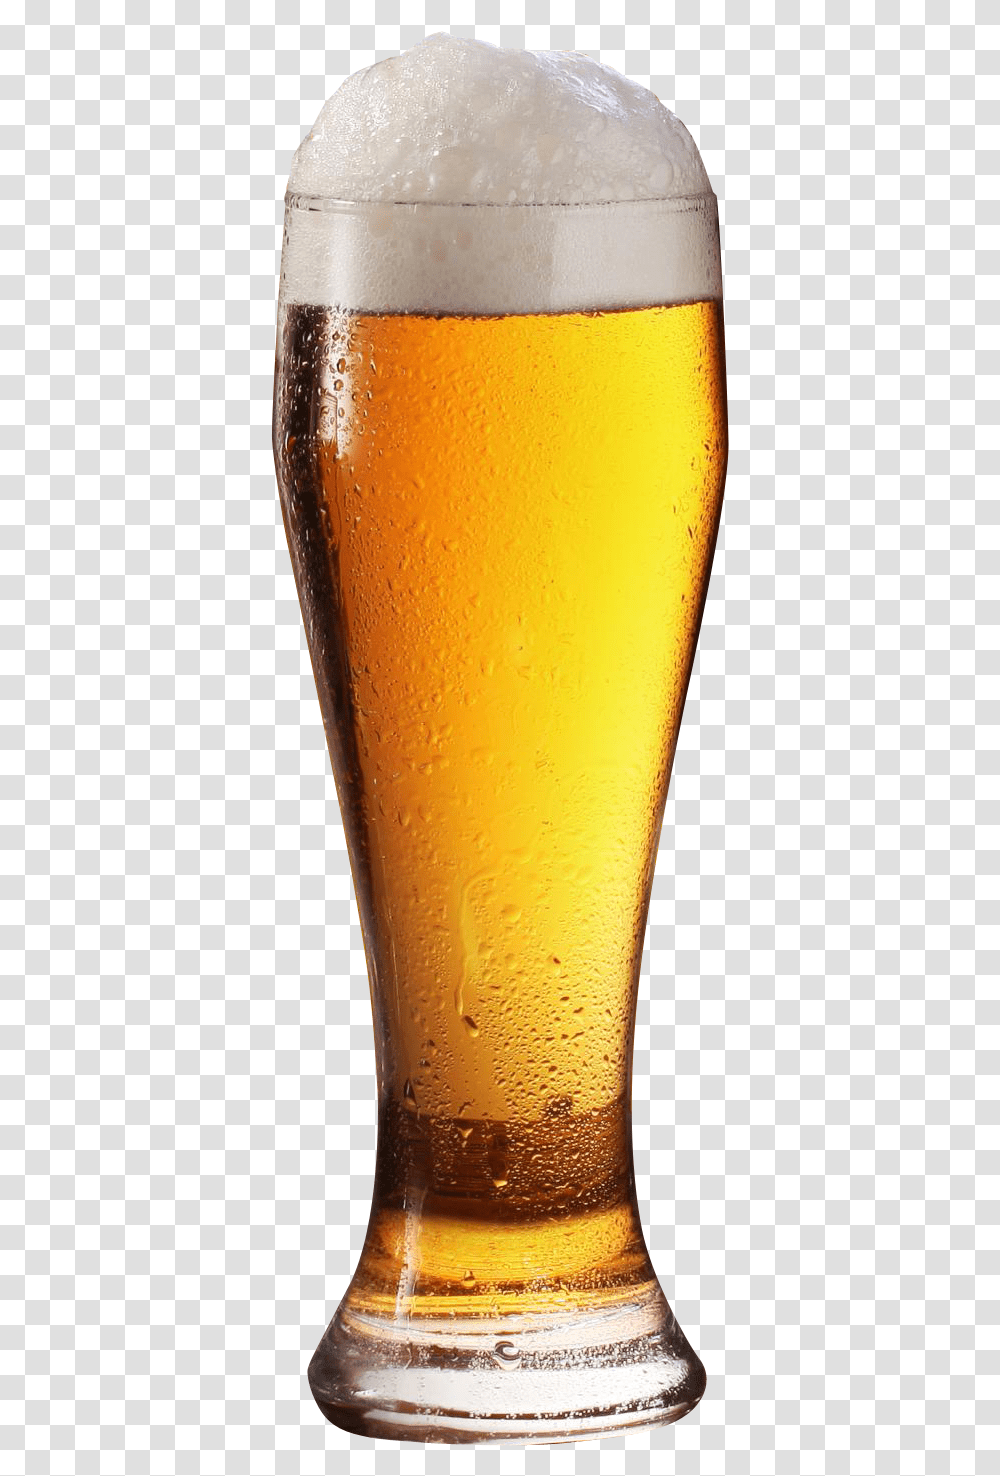 Beer Glass Image Beer Glass, Alcohol, Beverage, Drink, Lager Transparent Png